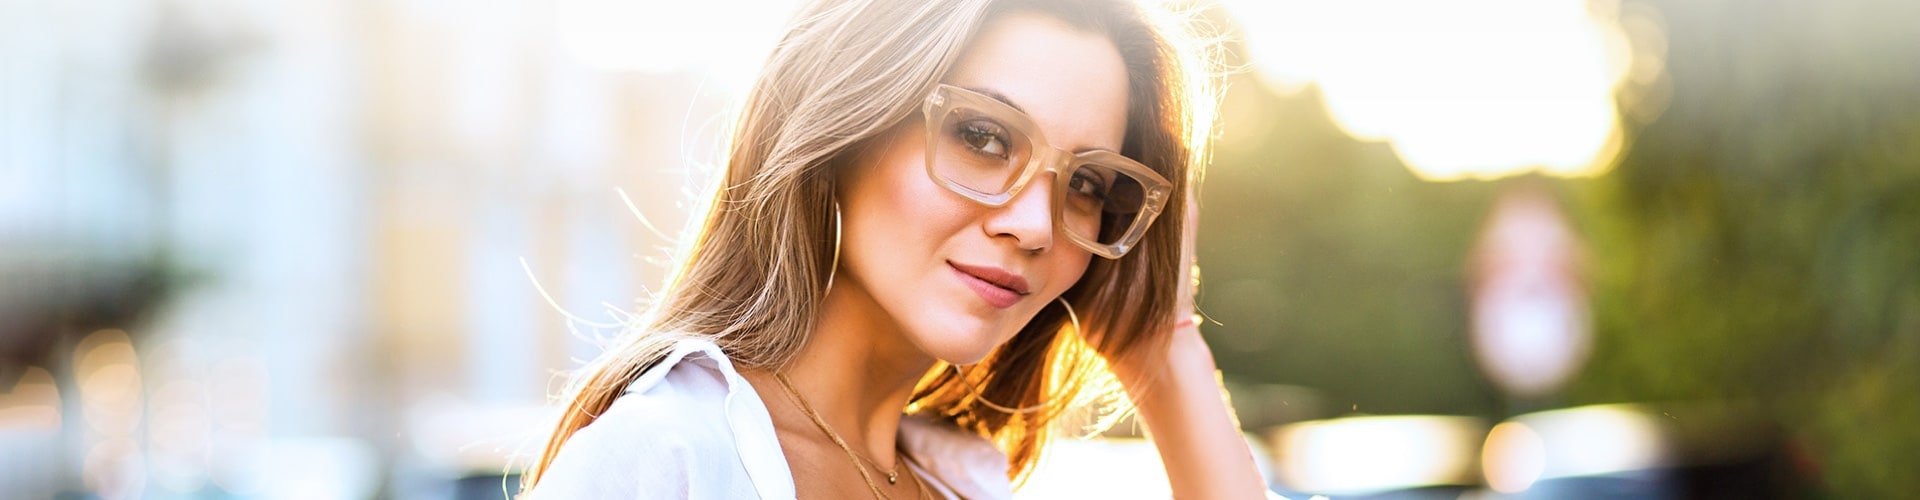 stylish woman wearing glasses